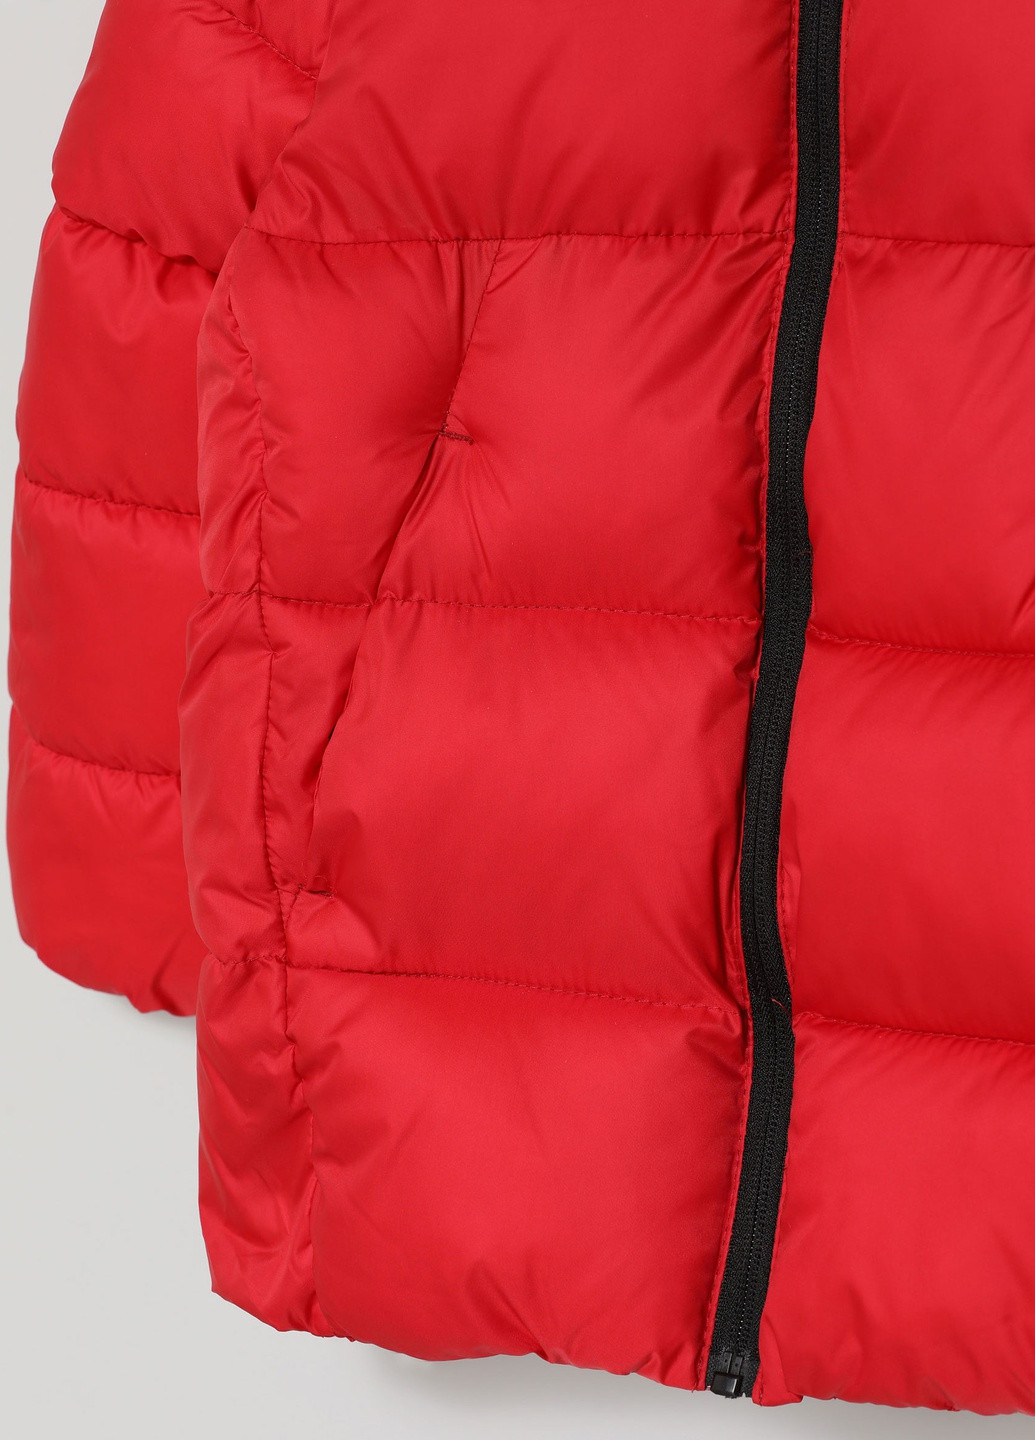 Красная демисезонная демисезонная куртка для мальчика красная 5811715600 Lefties